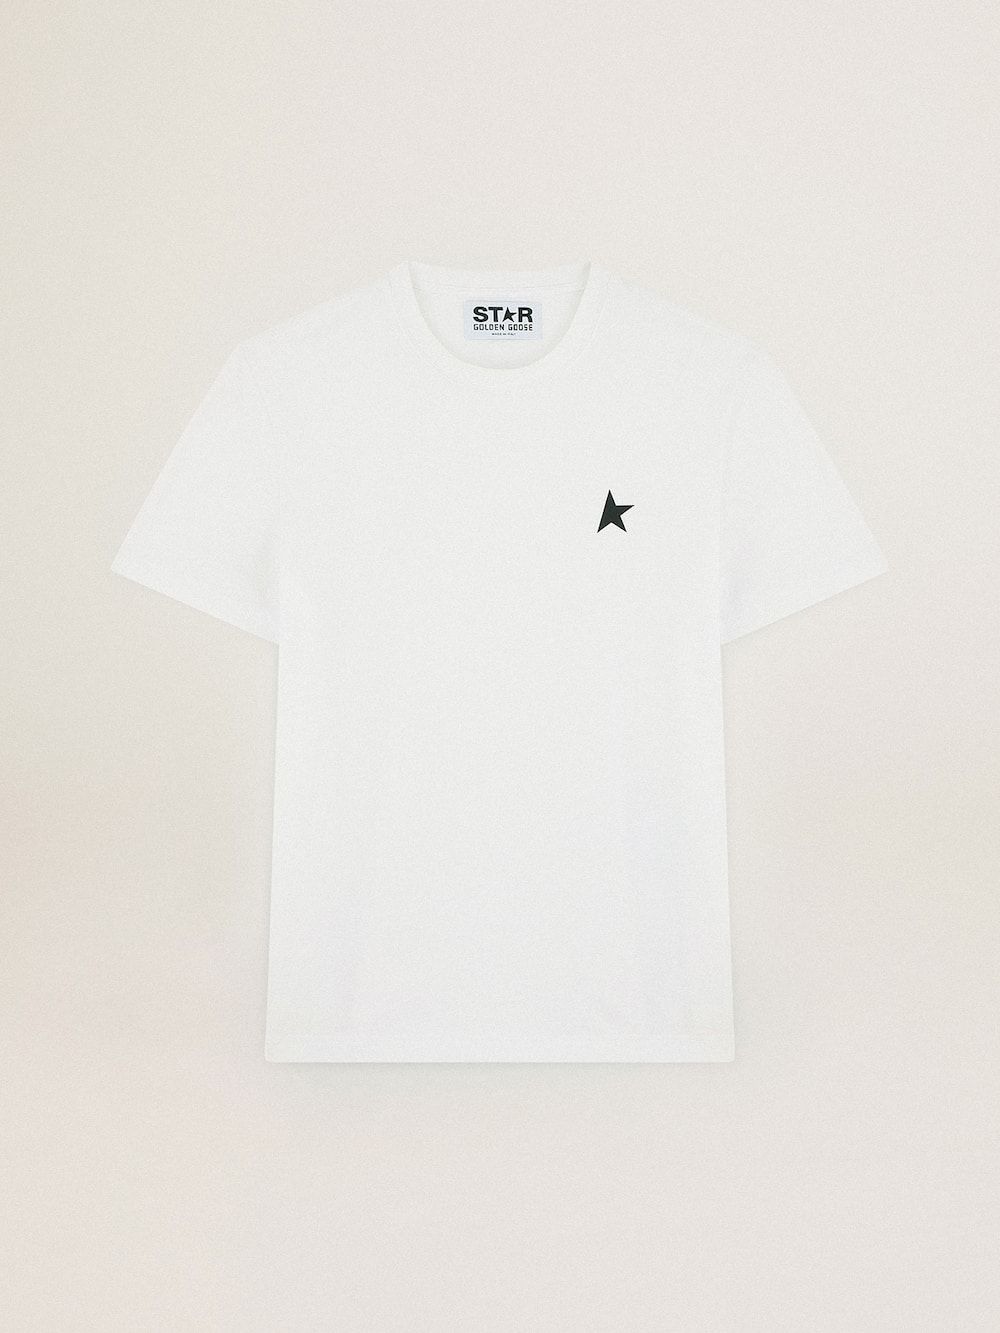 Golden Goose - T-shirt bianca Collezione Star con stella verde a contrasto sul davanti in 